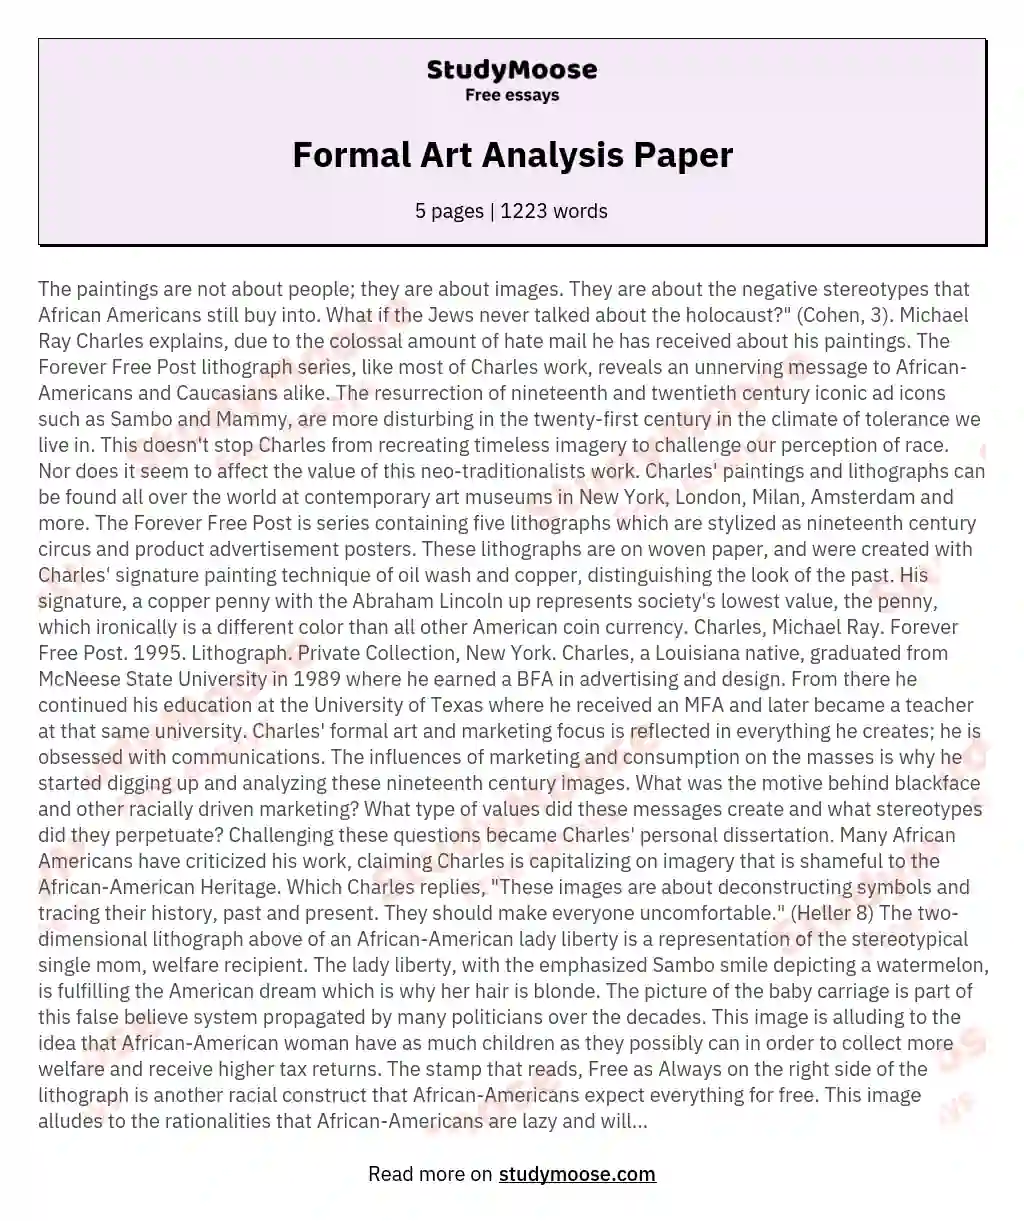 analyzing a formal essay